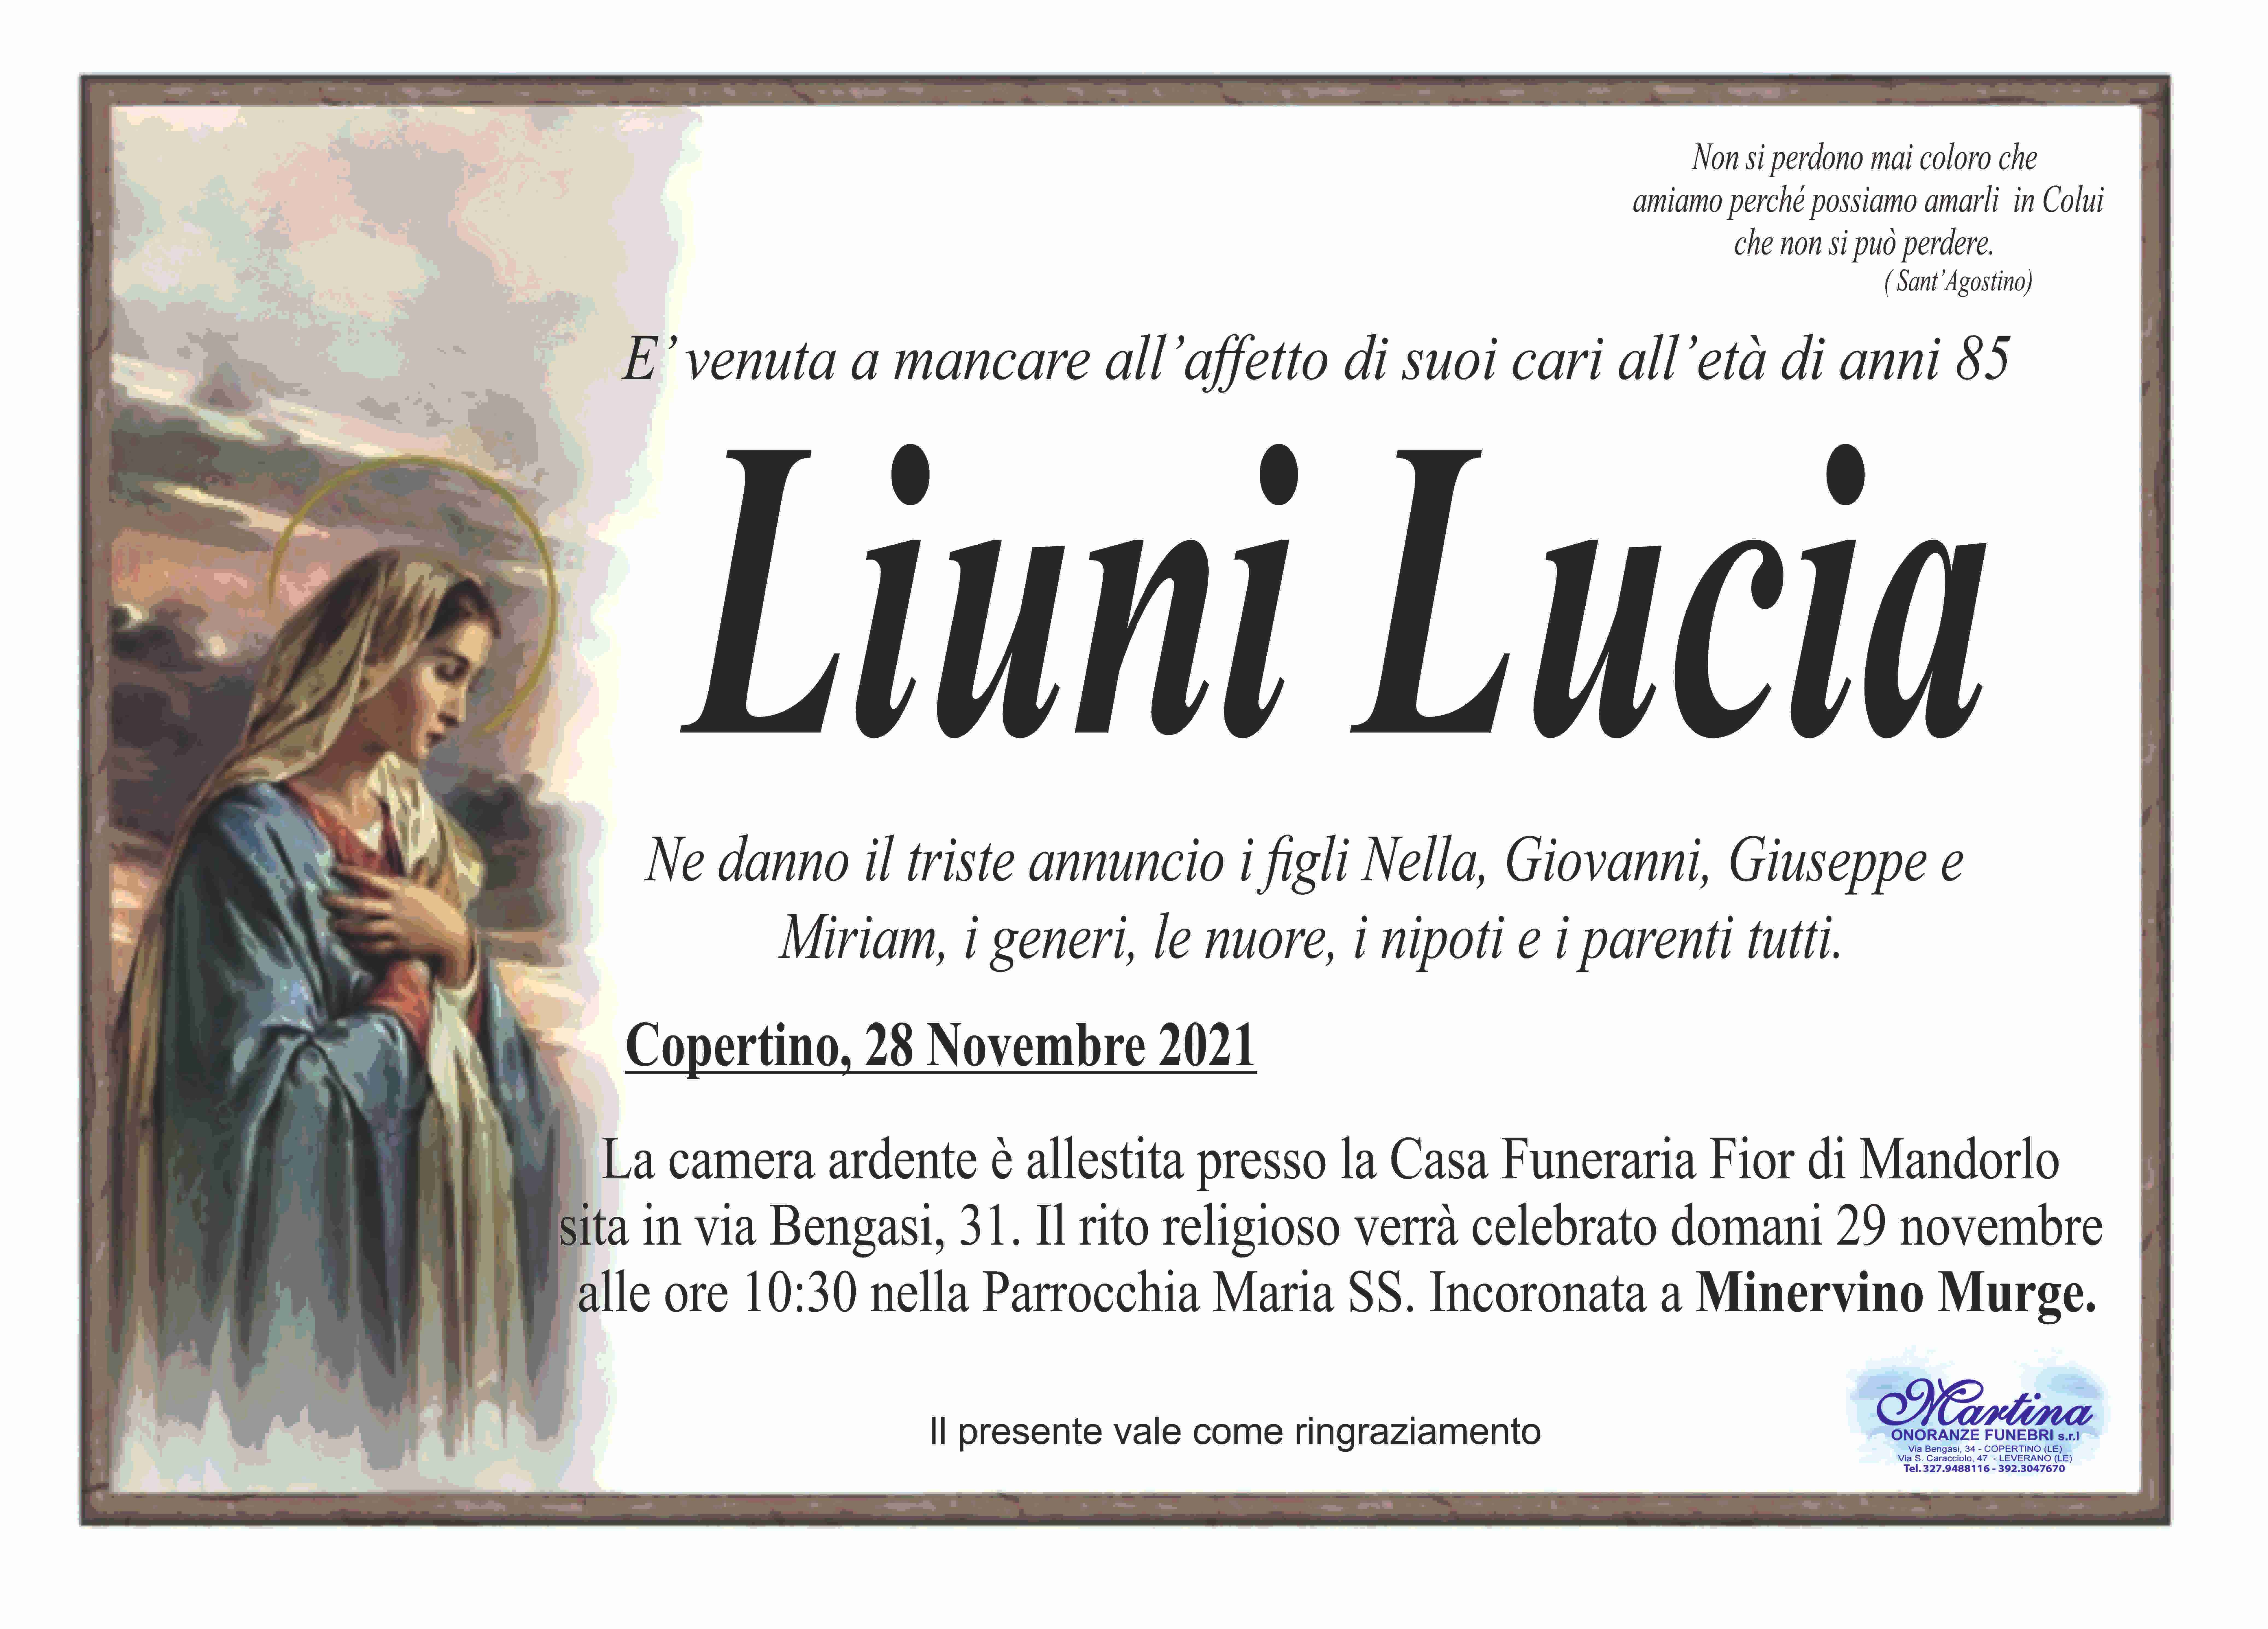 Lucia Liuni